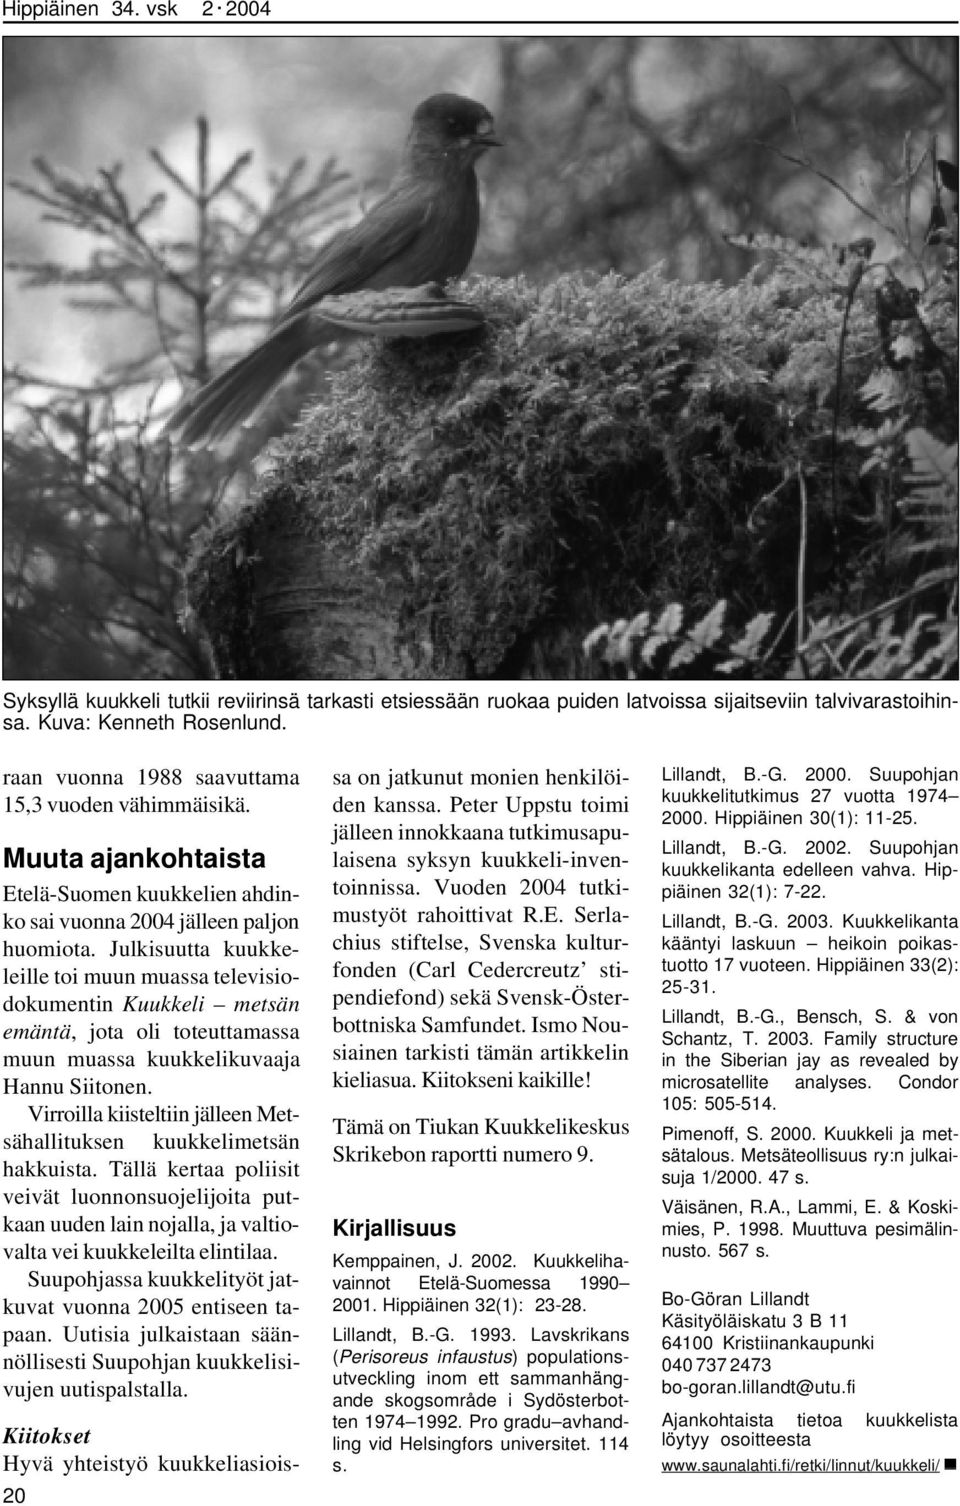 Julkisuutta kuukkeleille toi muun muassa televisiodokumentin Kuukkeli metsän emäntä, jota oli toteuttamassa muun muassa kuukkelikuvaaja Hannu Siitonen.